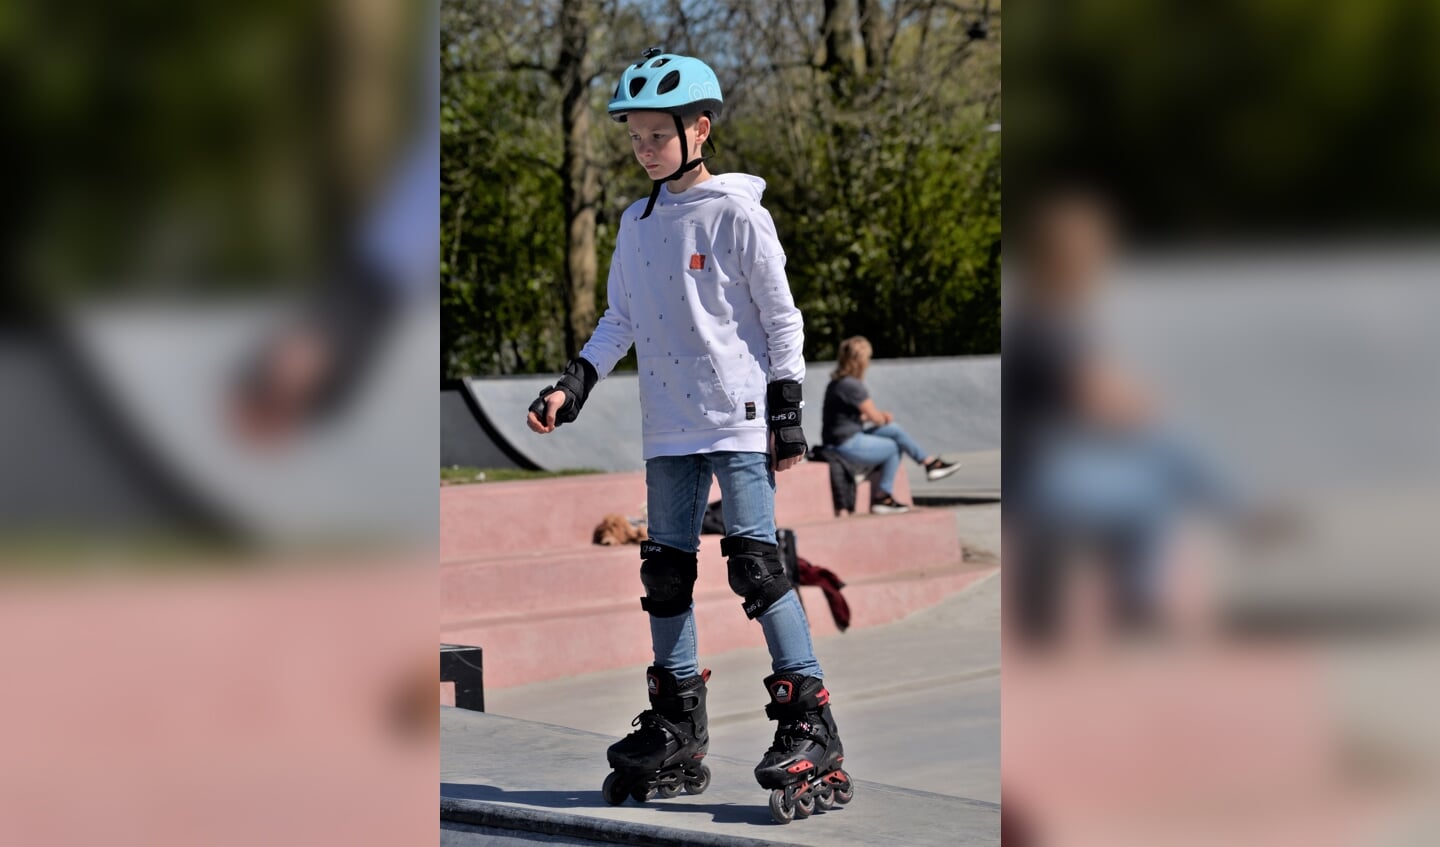 Een enkeling liet zien hoe het moet op de skatebaan en was hier volledig op gekleed met handschoenen, helm en valprotectie aan de armen en benen.